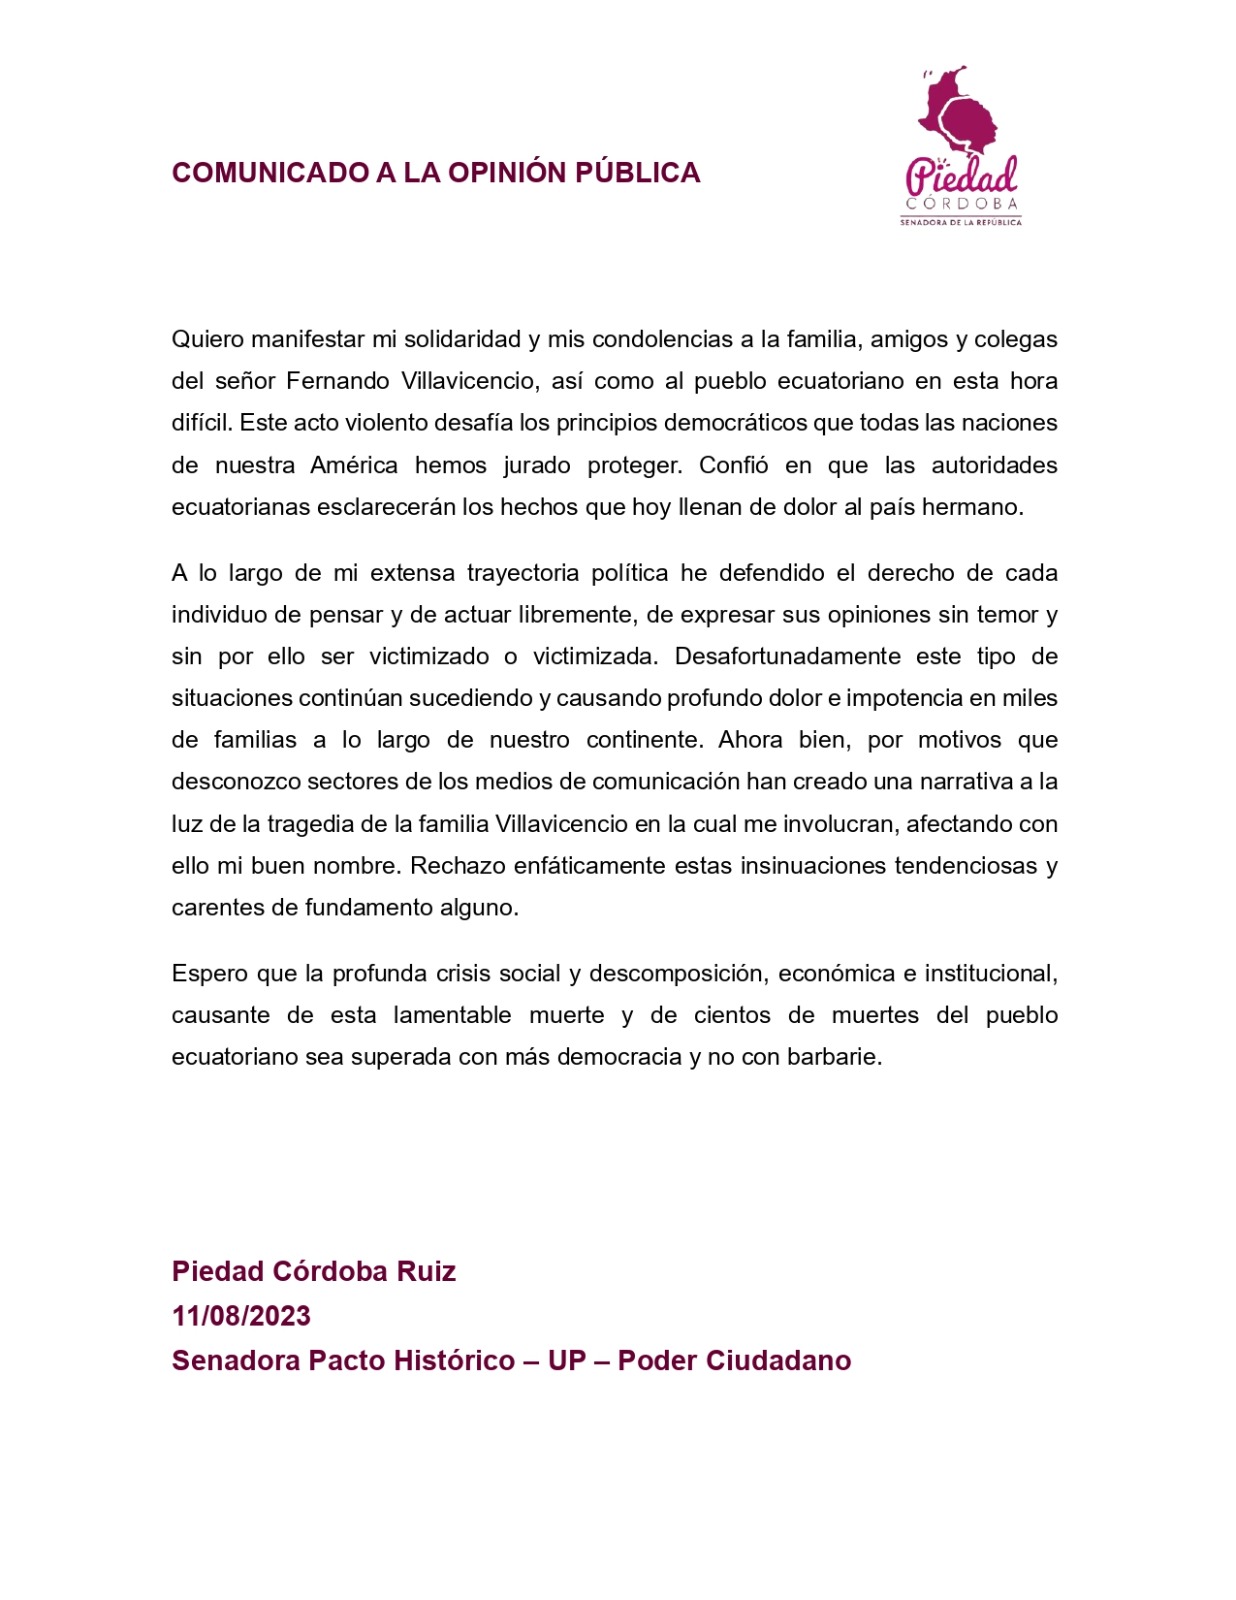 El comunicado emitido por la senadora Piedad Córdoba.